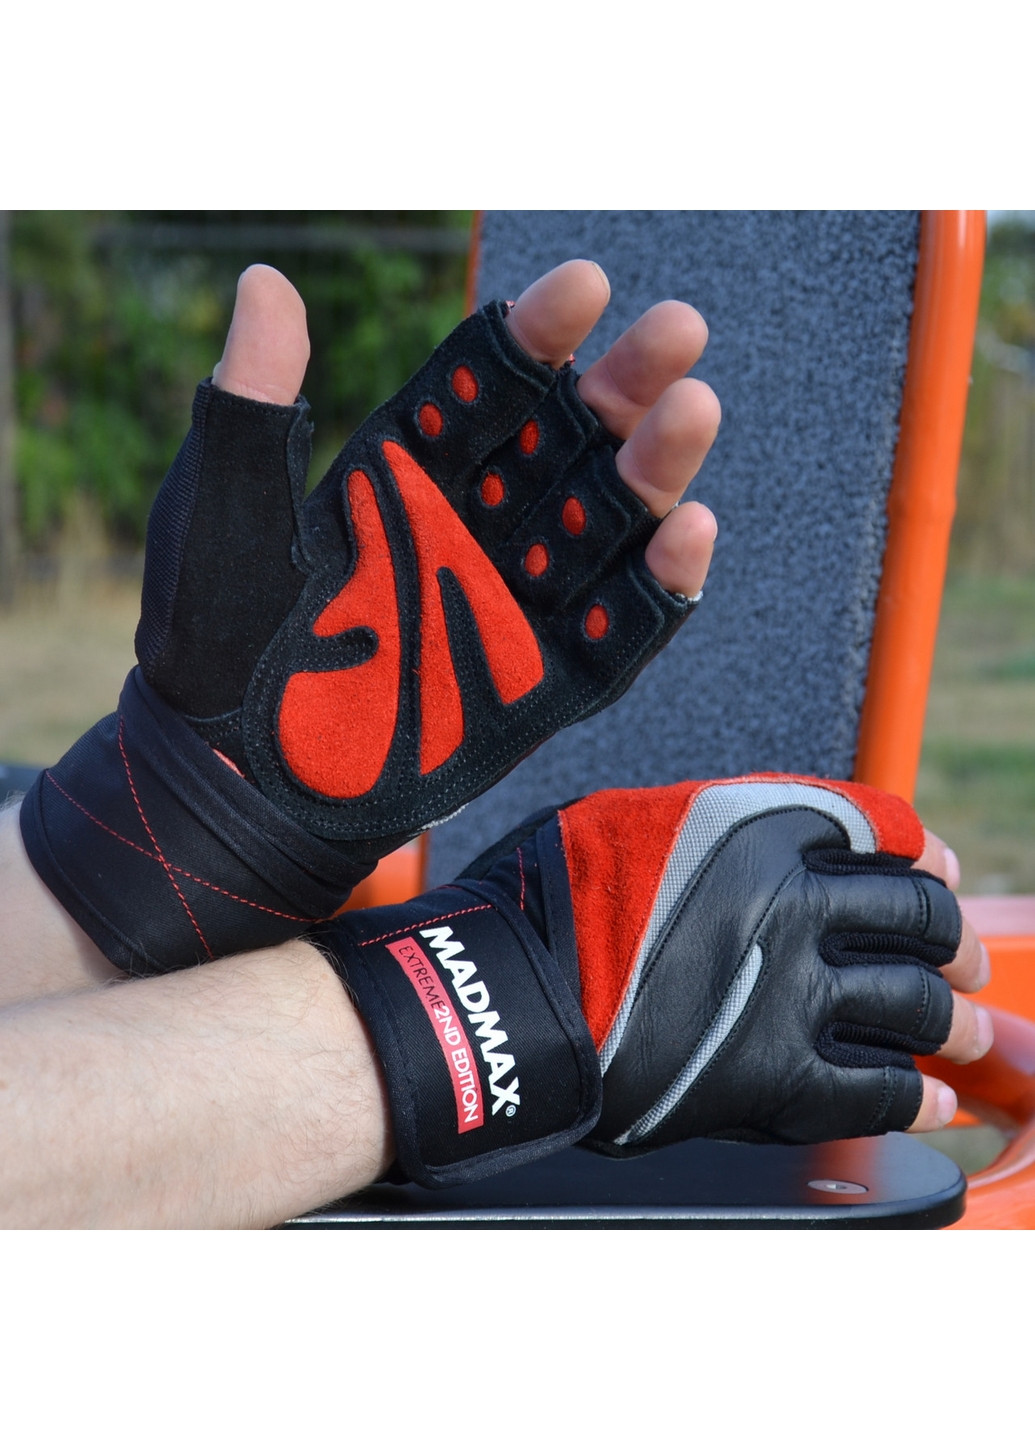 Унисекс перчатки для фитнеса M Mad Max (267655612)